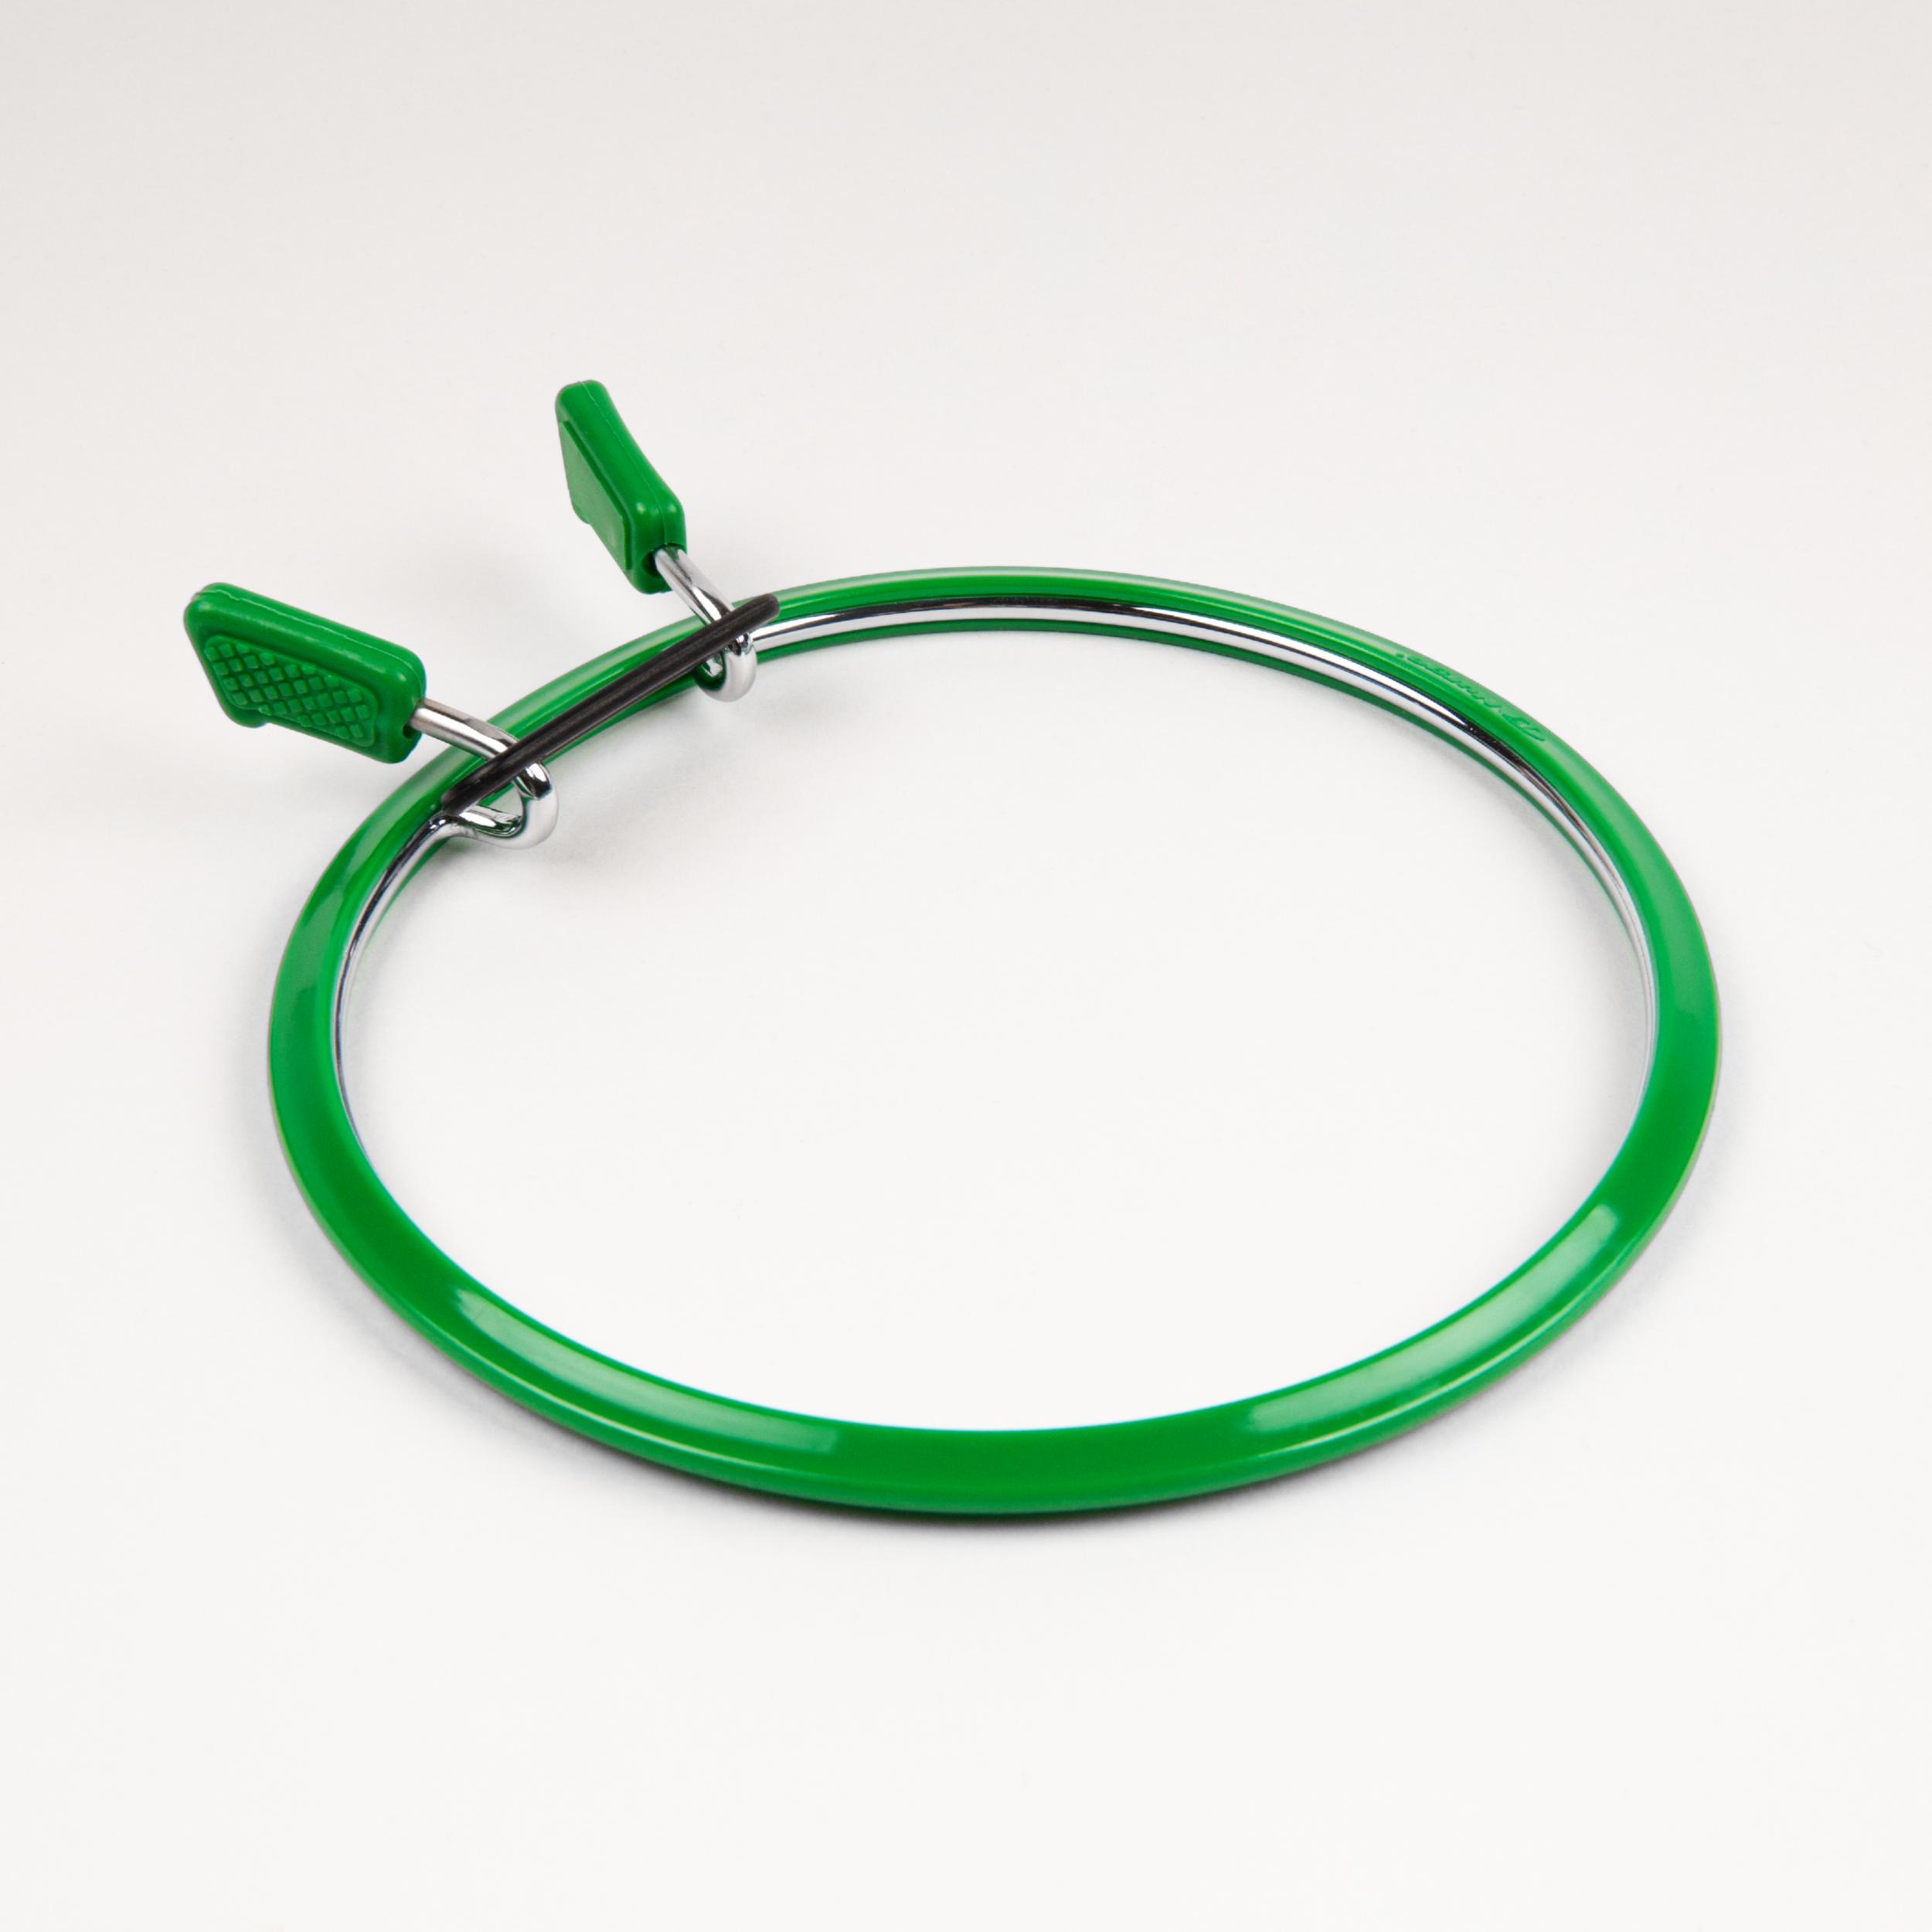 160-1/зелені Пяльці Nurge пружинні для вишивання та штопки, висота обідка 7мм, діаметр 195мм